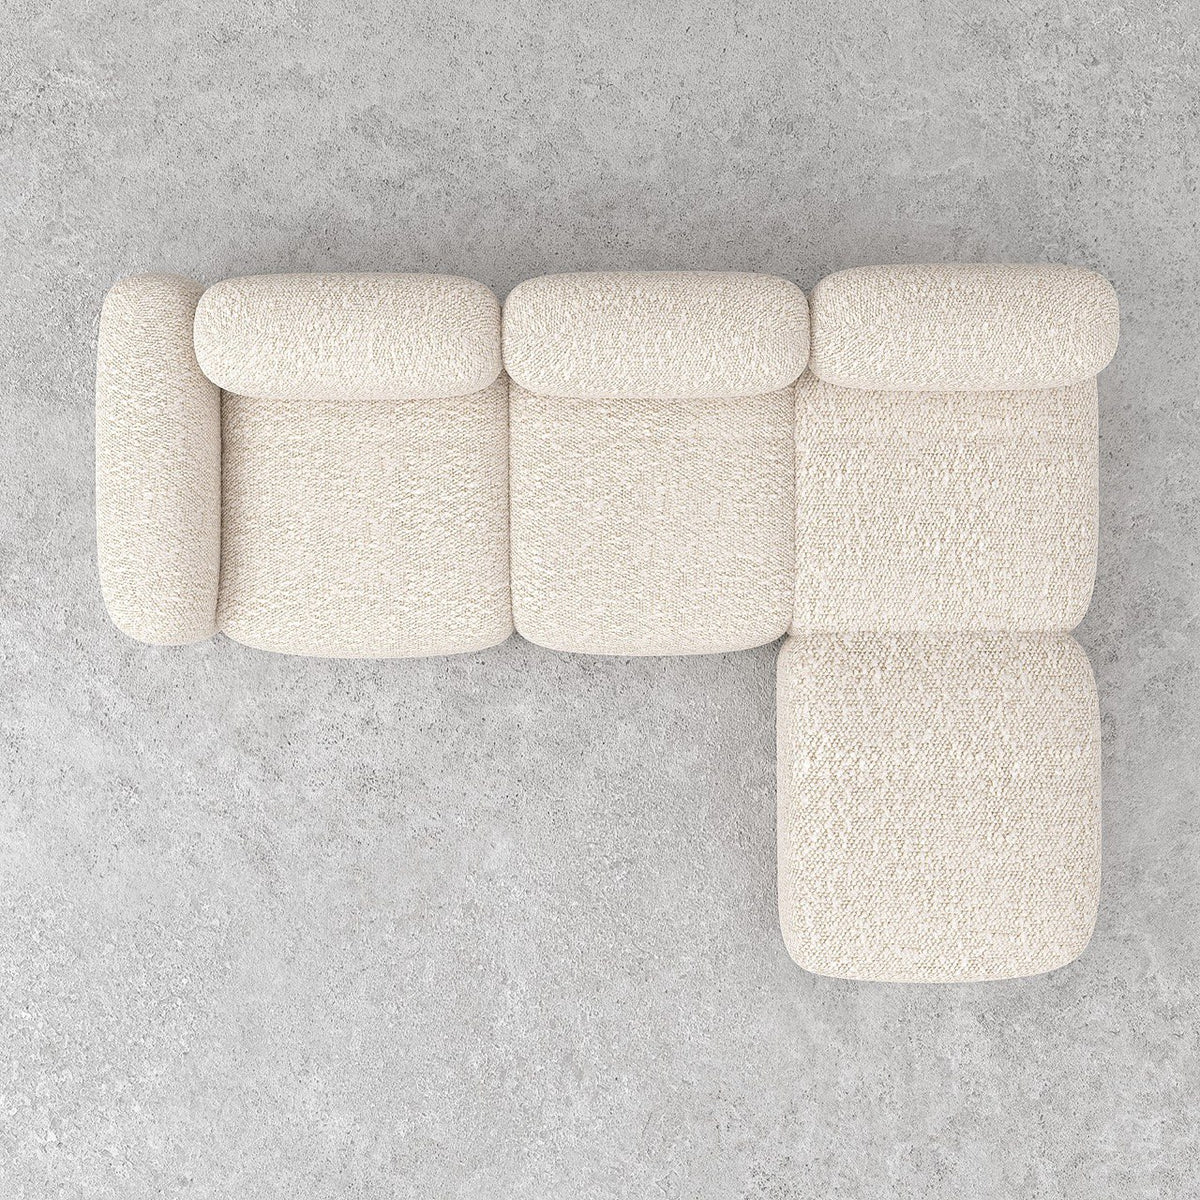 Marshmello Modular Sofa / Off-White Boucle